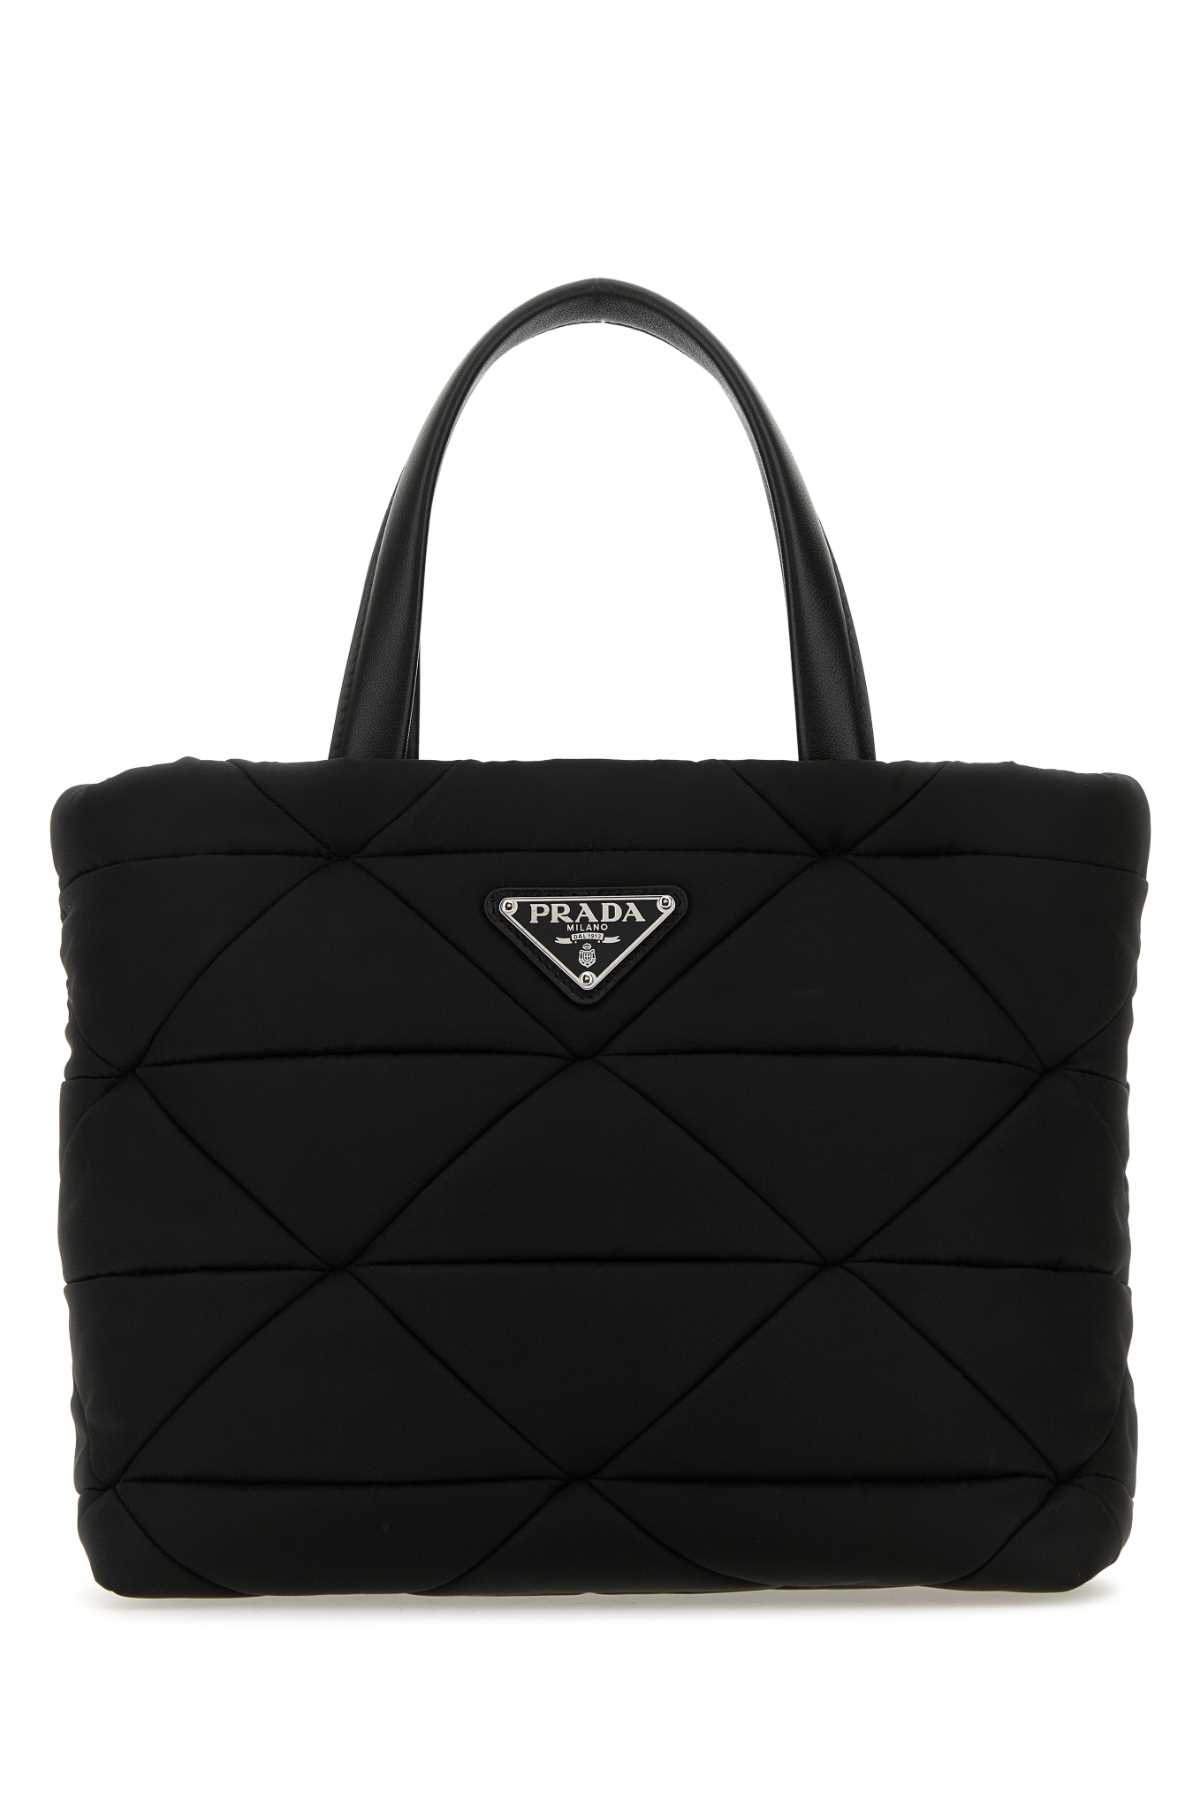 Shop Prada Black Re-nylon Handbag